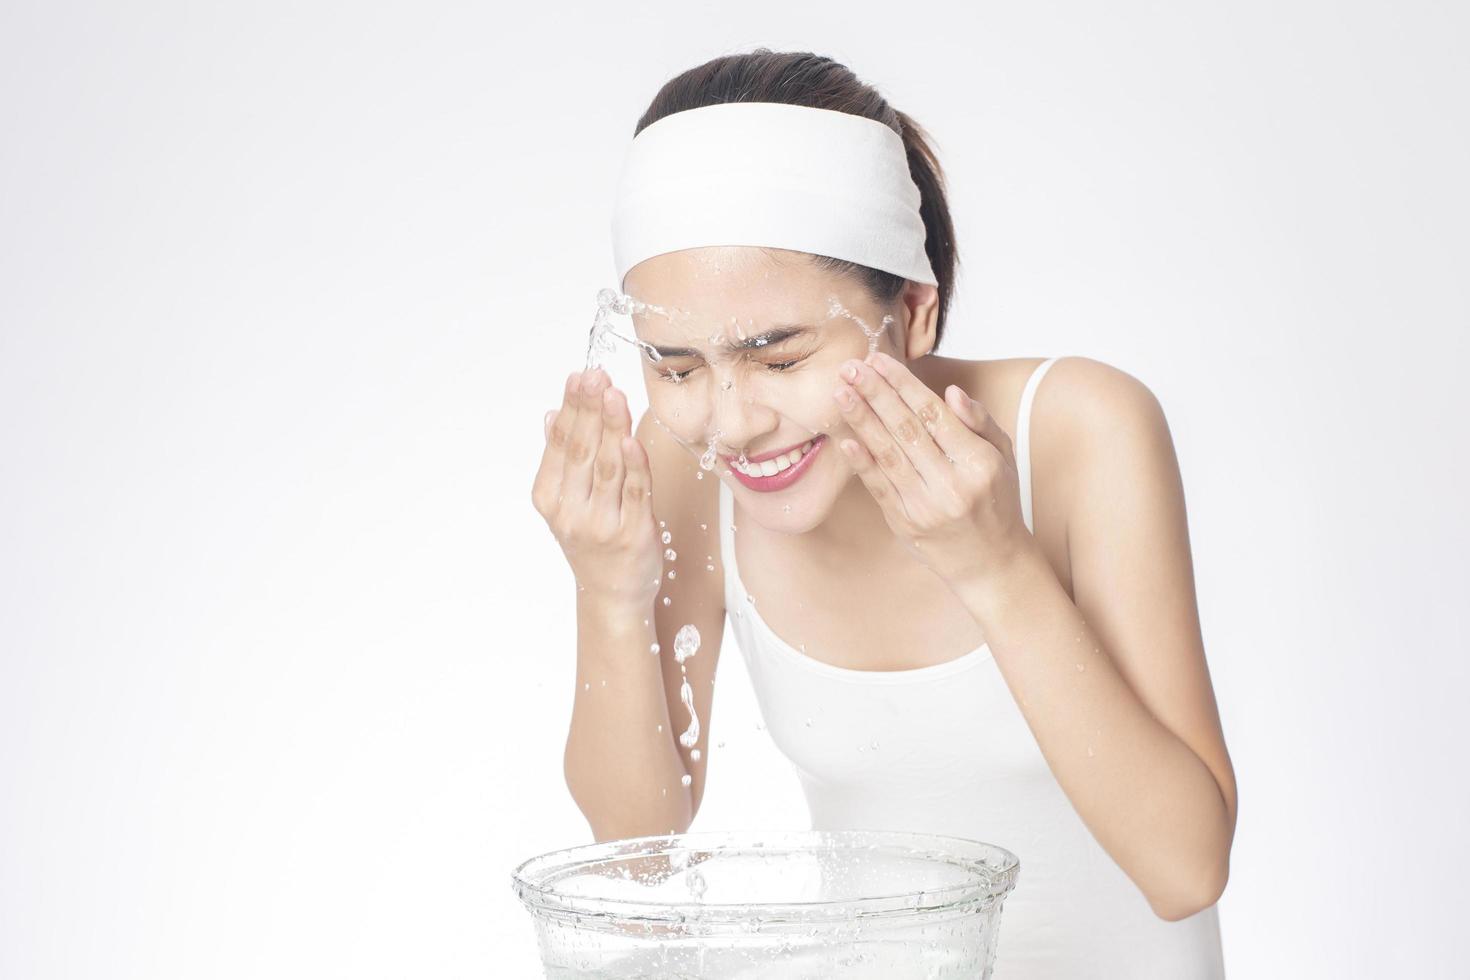 bella donna si sta lavando il viso su sfondo bianco white foto